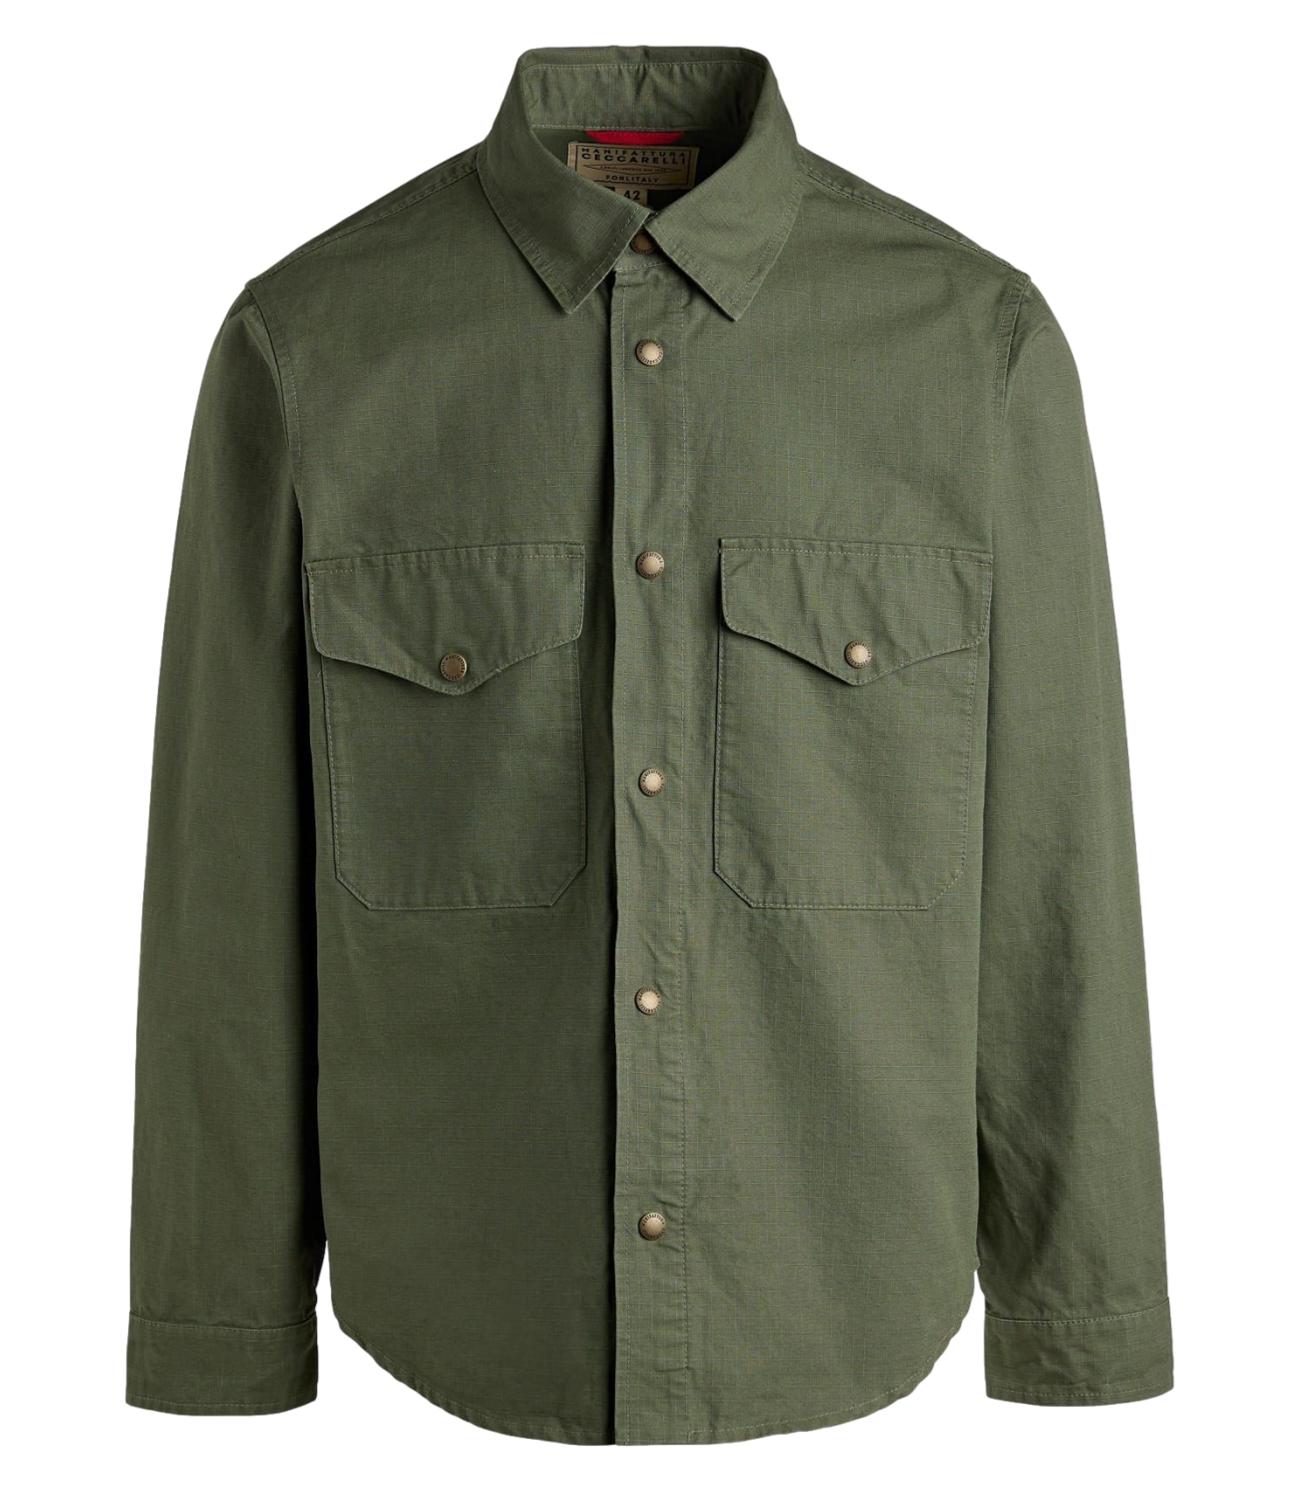 Manifattura Ceccarelli camicia country shirt verde